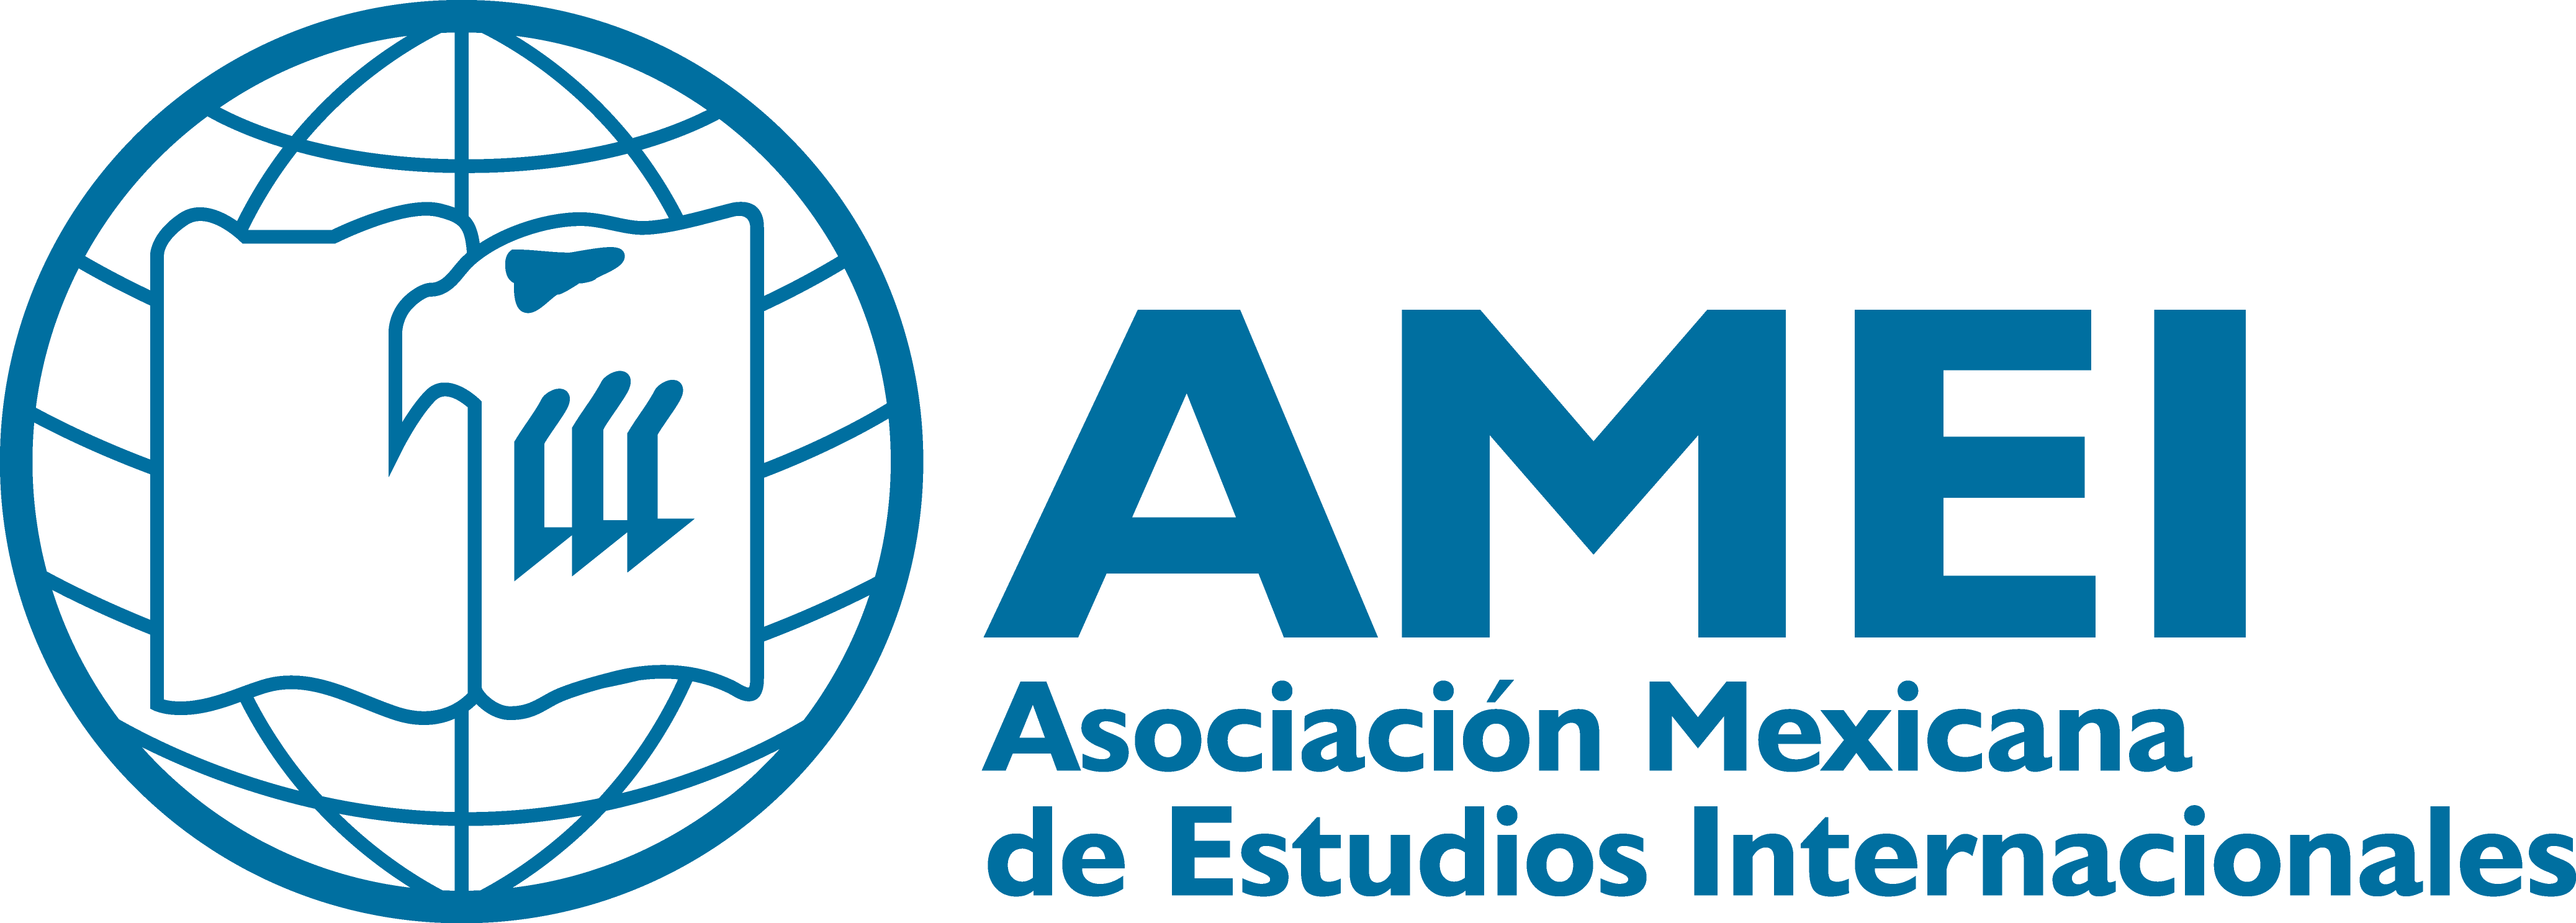 AMEI logo oficial